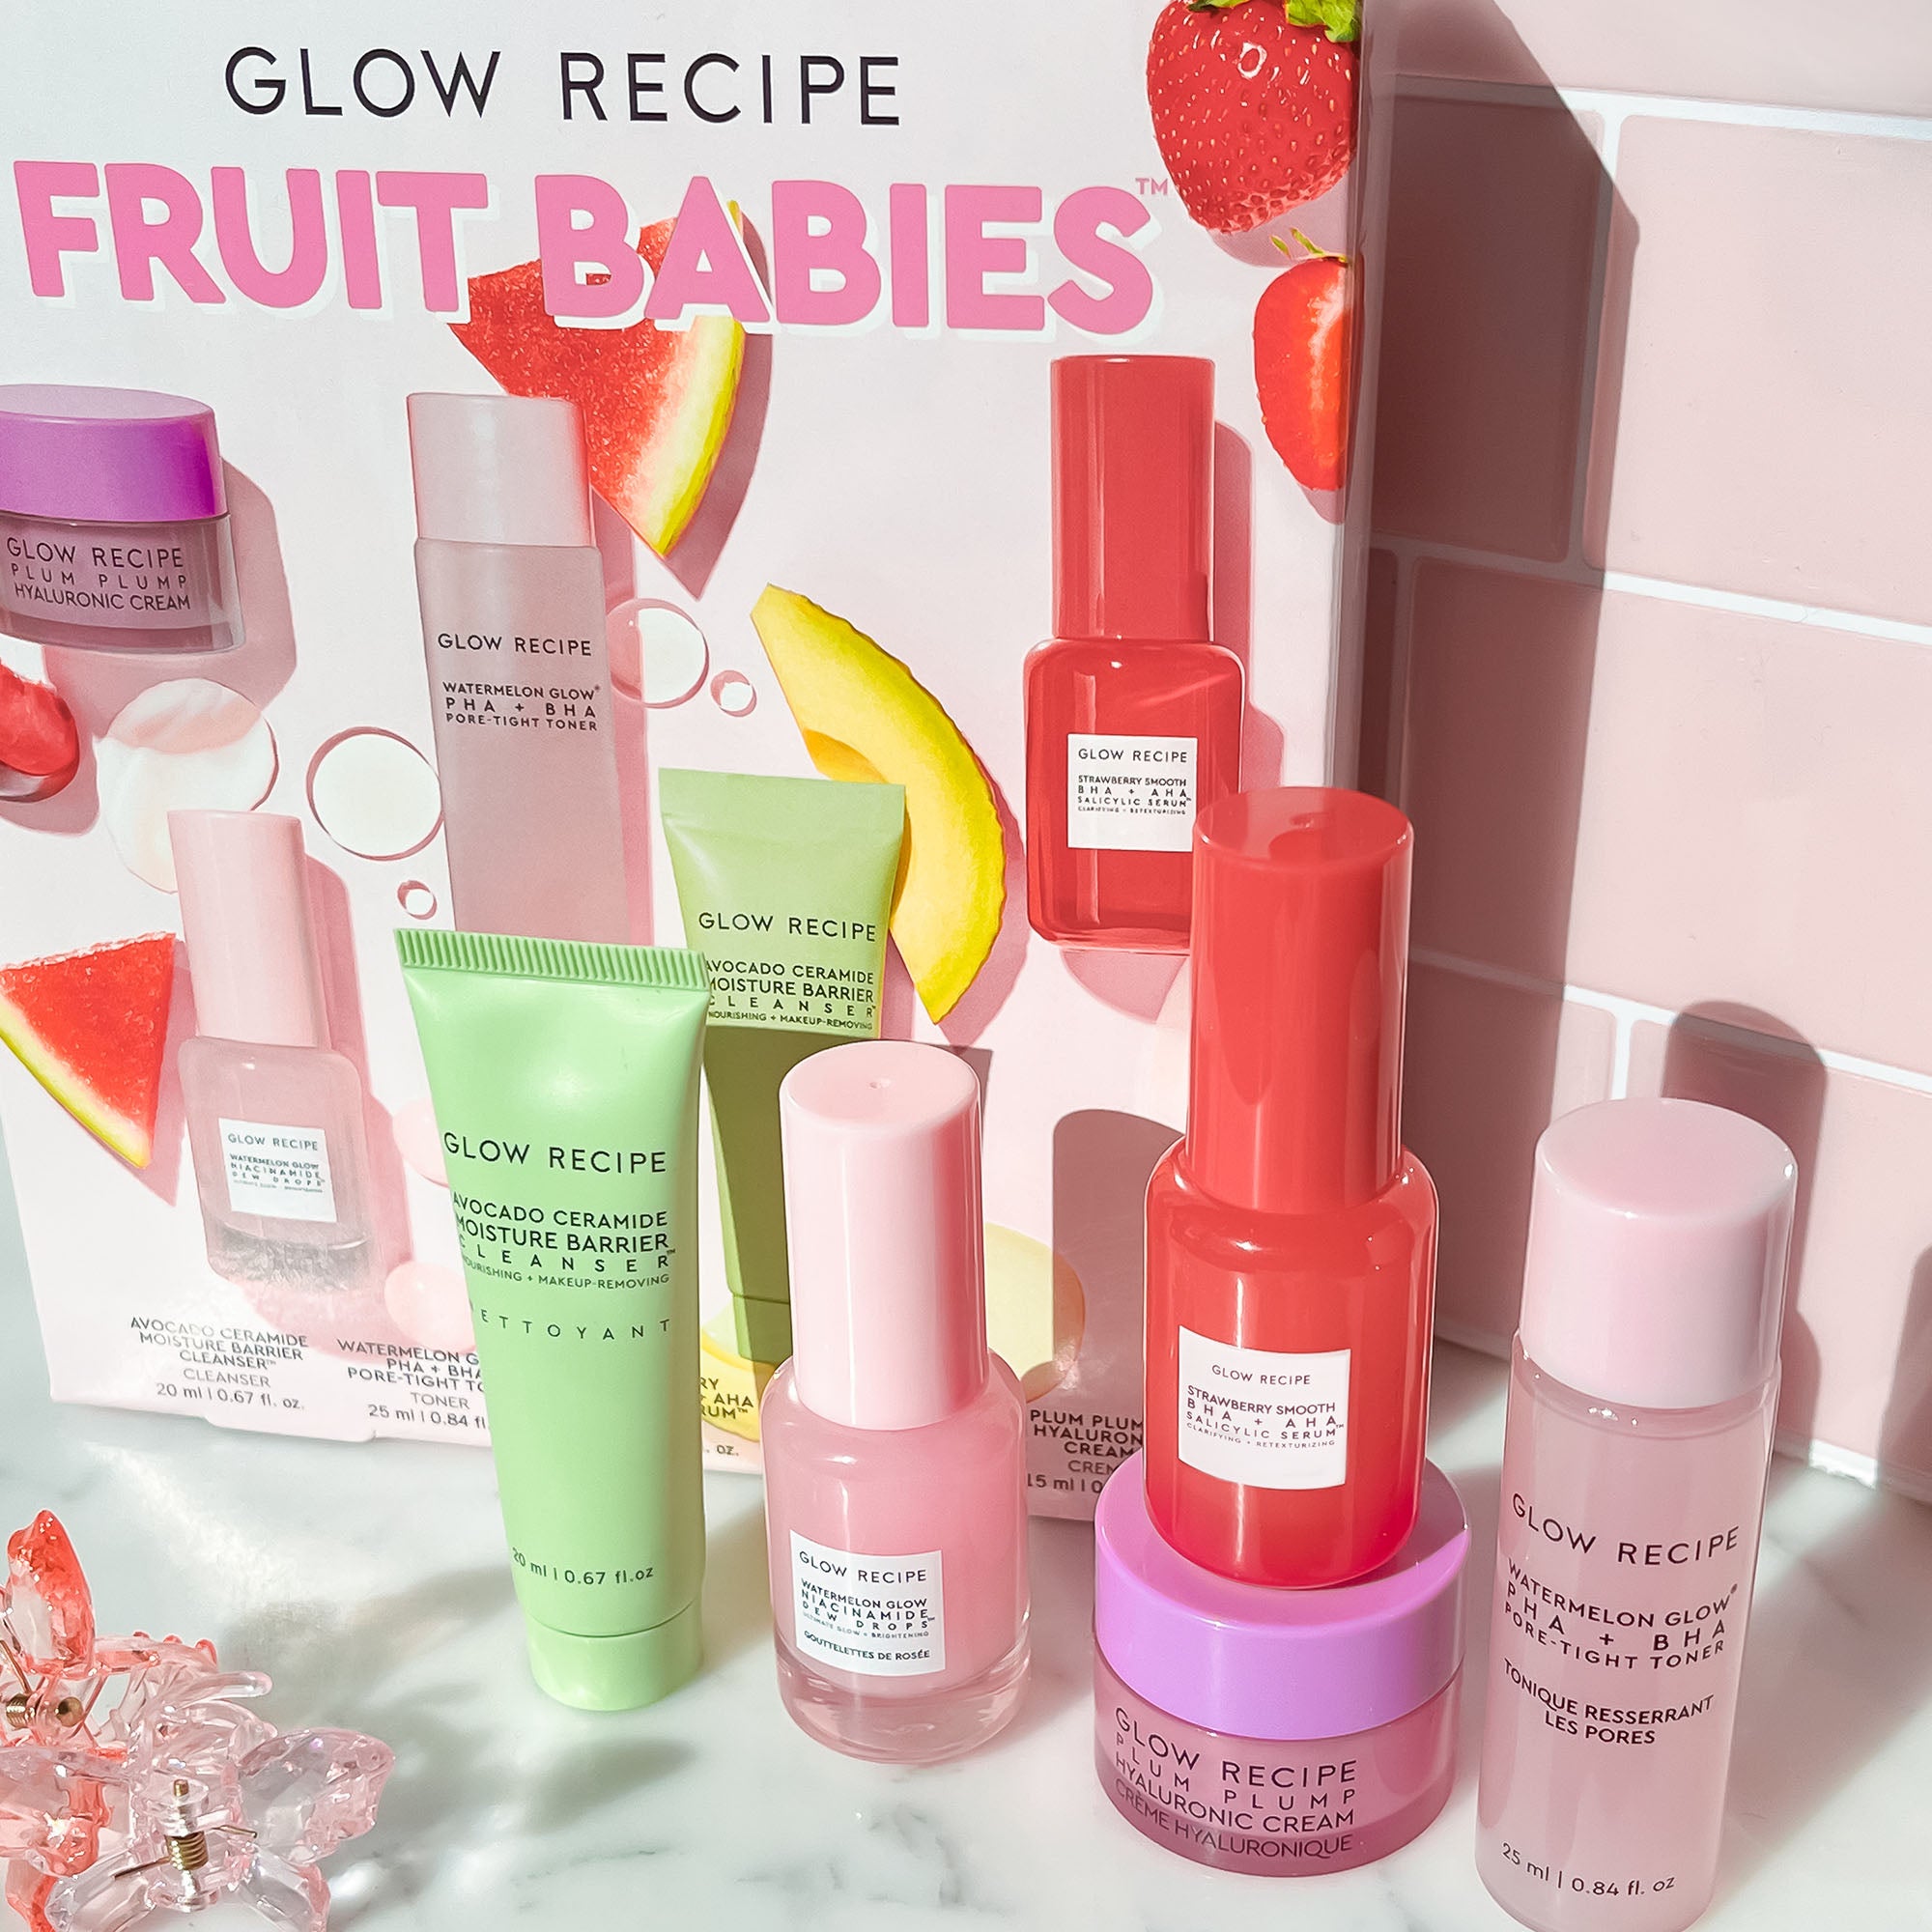 GLOW RECIPE - Fruit Babies Bestsellers Kit